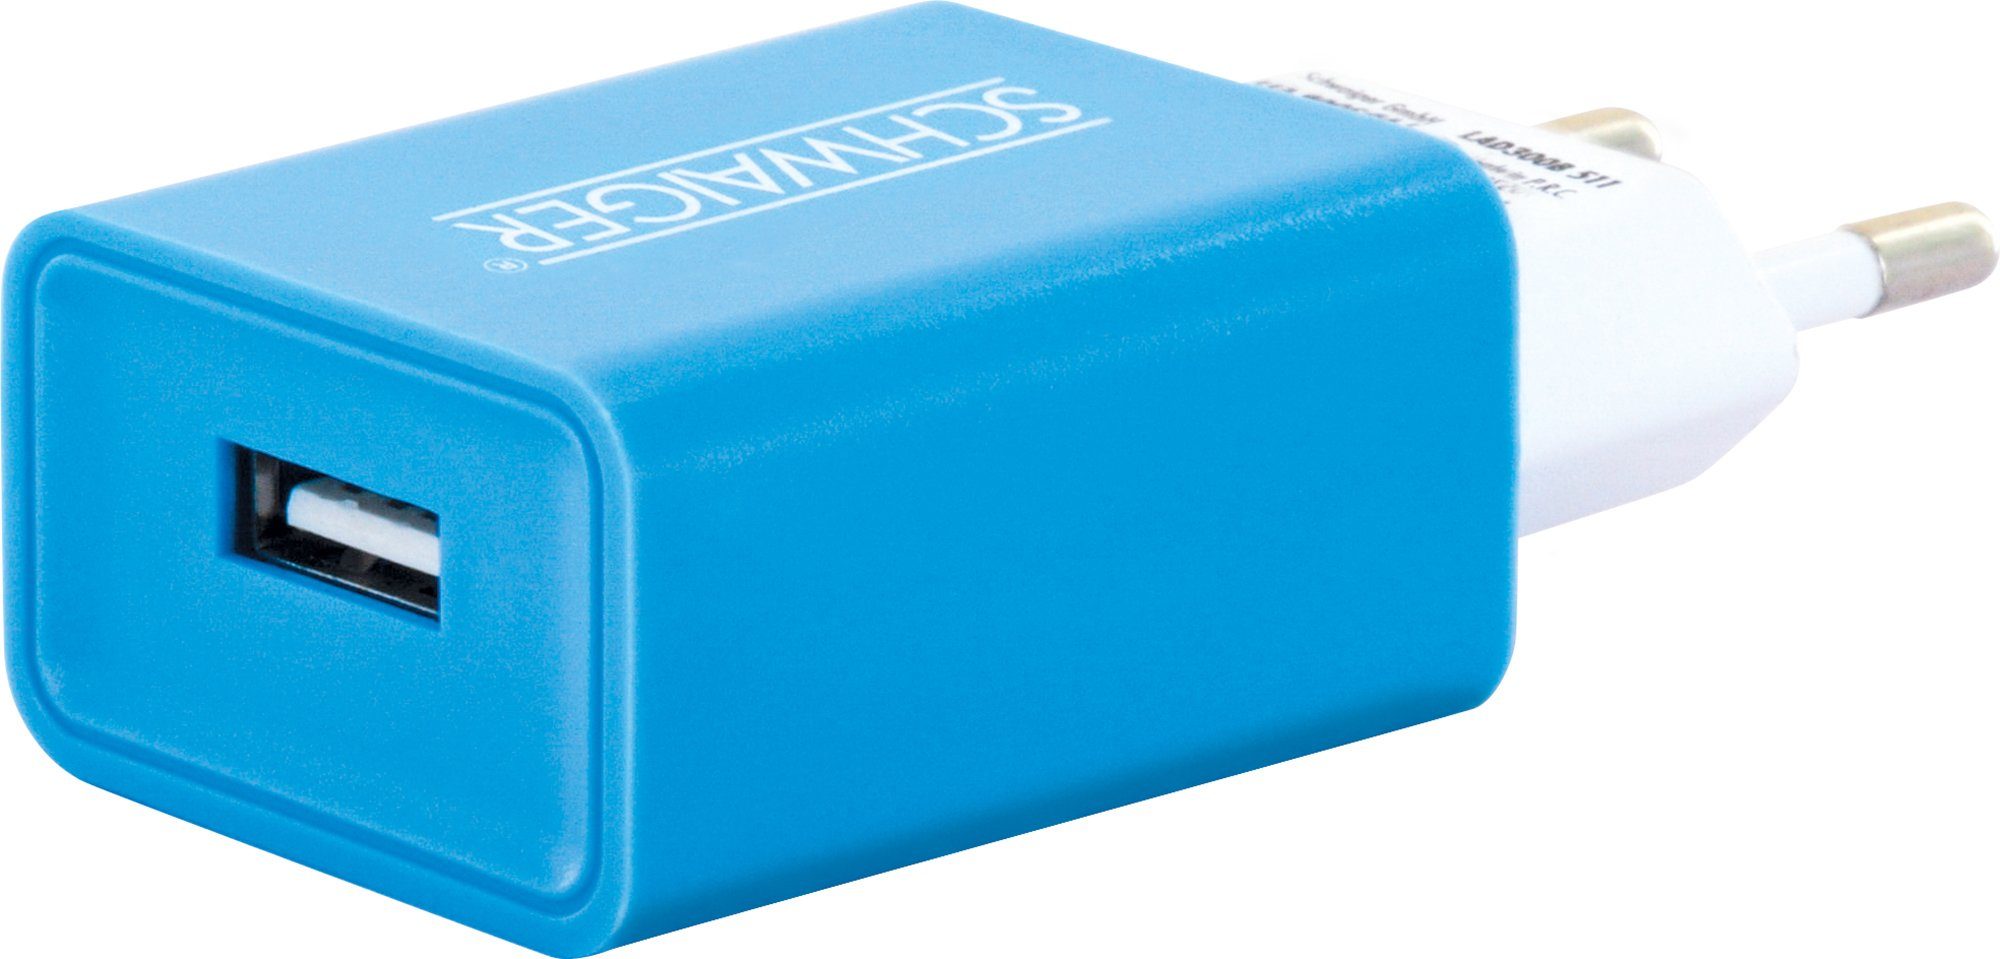 511 Multi-Schutz blau Schwaiger KFZ-Adapter Sicherheitssystem Eurostecker LAD300B USB A Buchse, zu integriertes 2.0